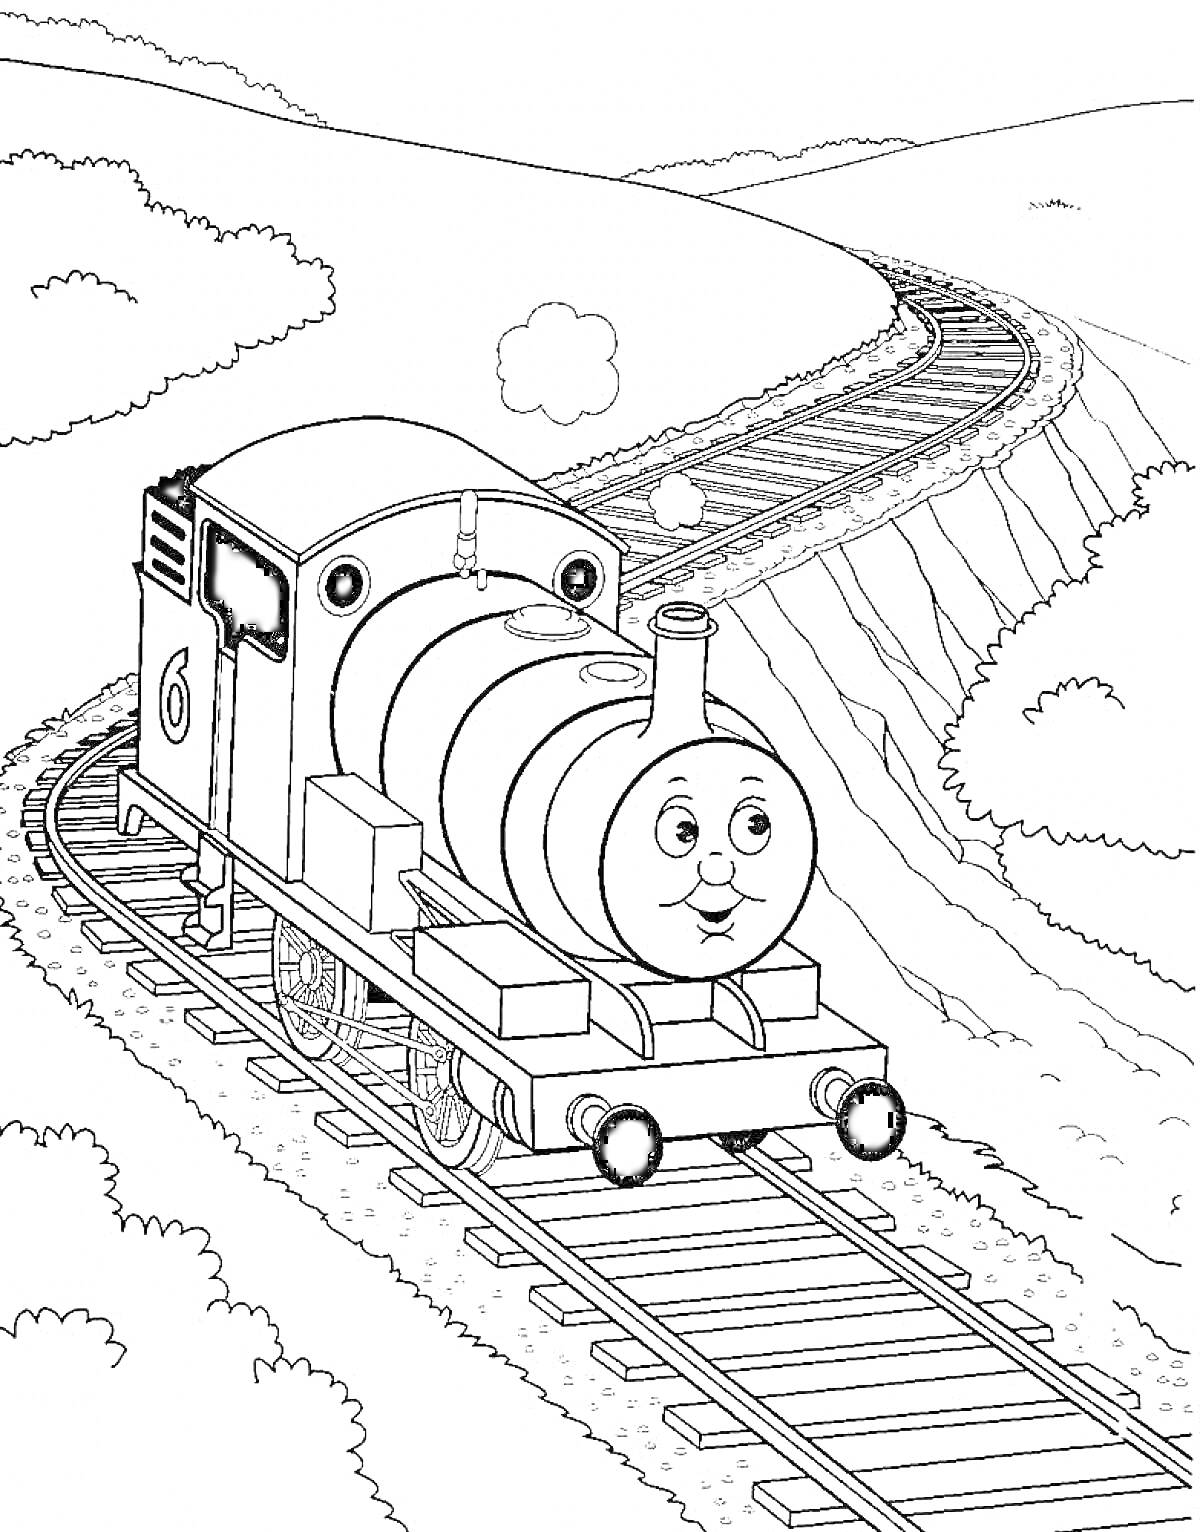 Раскраска Паровозик Томас на железнодорожных путях с округлыми холмами и облаками